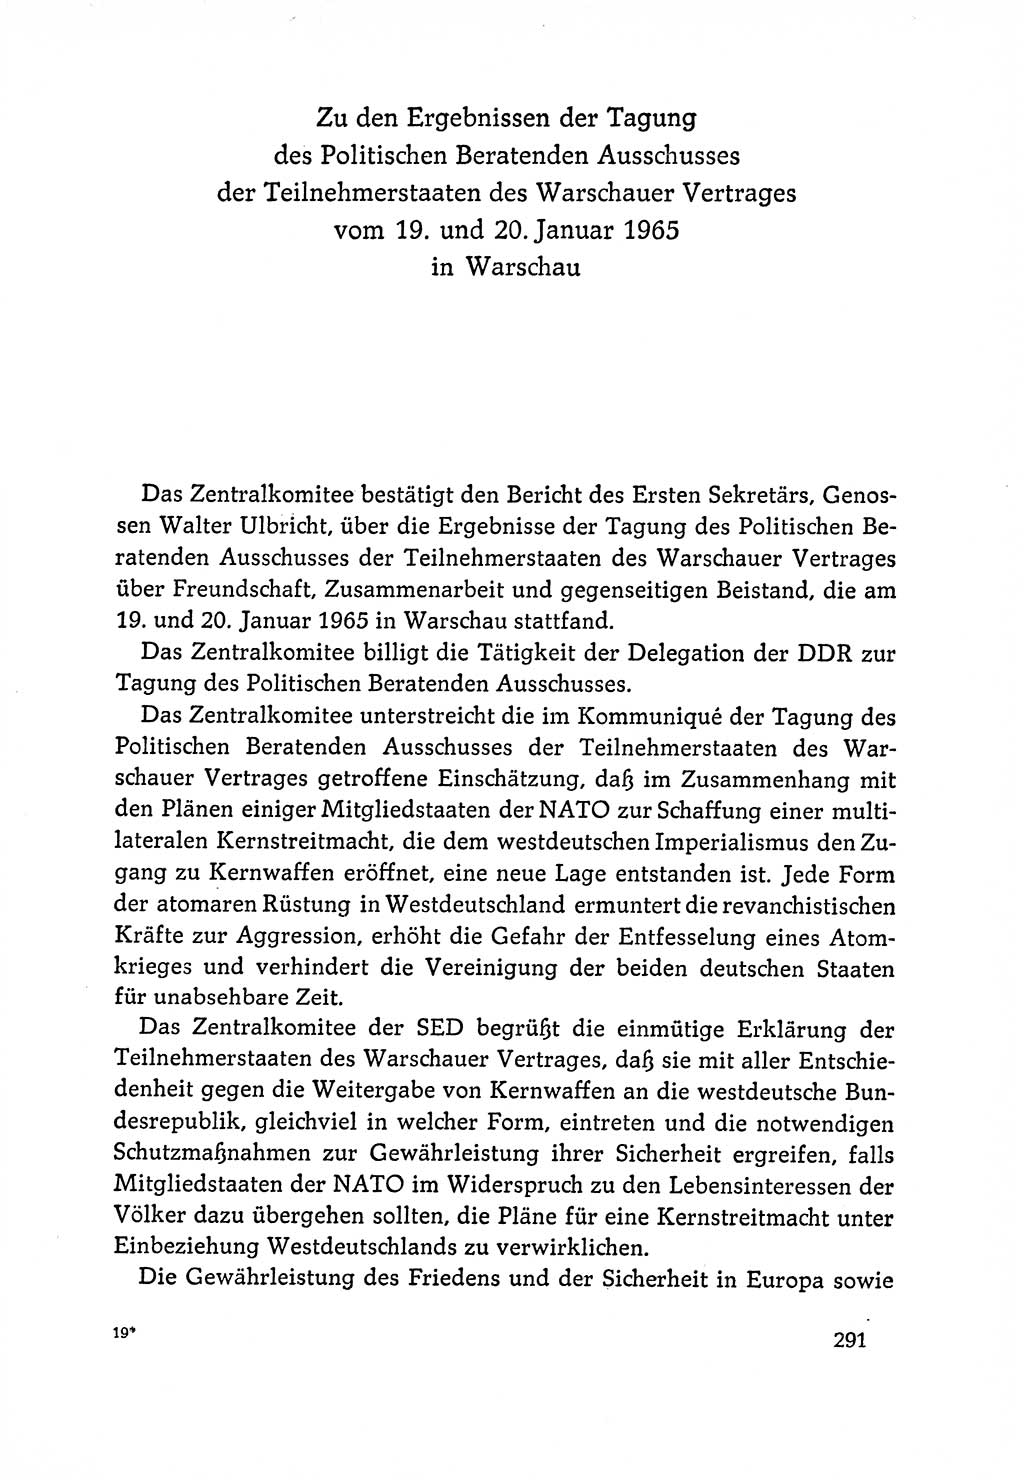 Dokumente der Sozialistischen Einheitspartei Deutschlands (SED) [Deutsche Demokratische Republik (DDR)] 1964-1965, Seite 291 (Dok. SED DDR 1964-1965, S. 291)